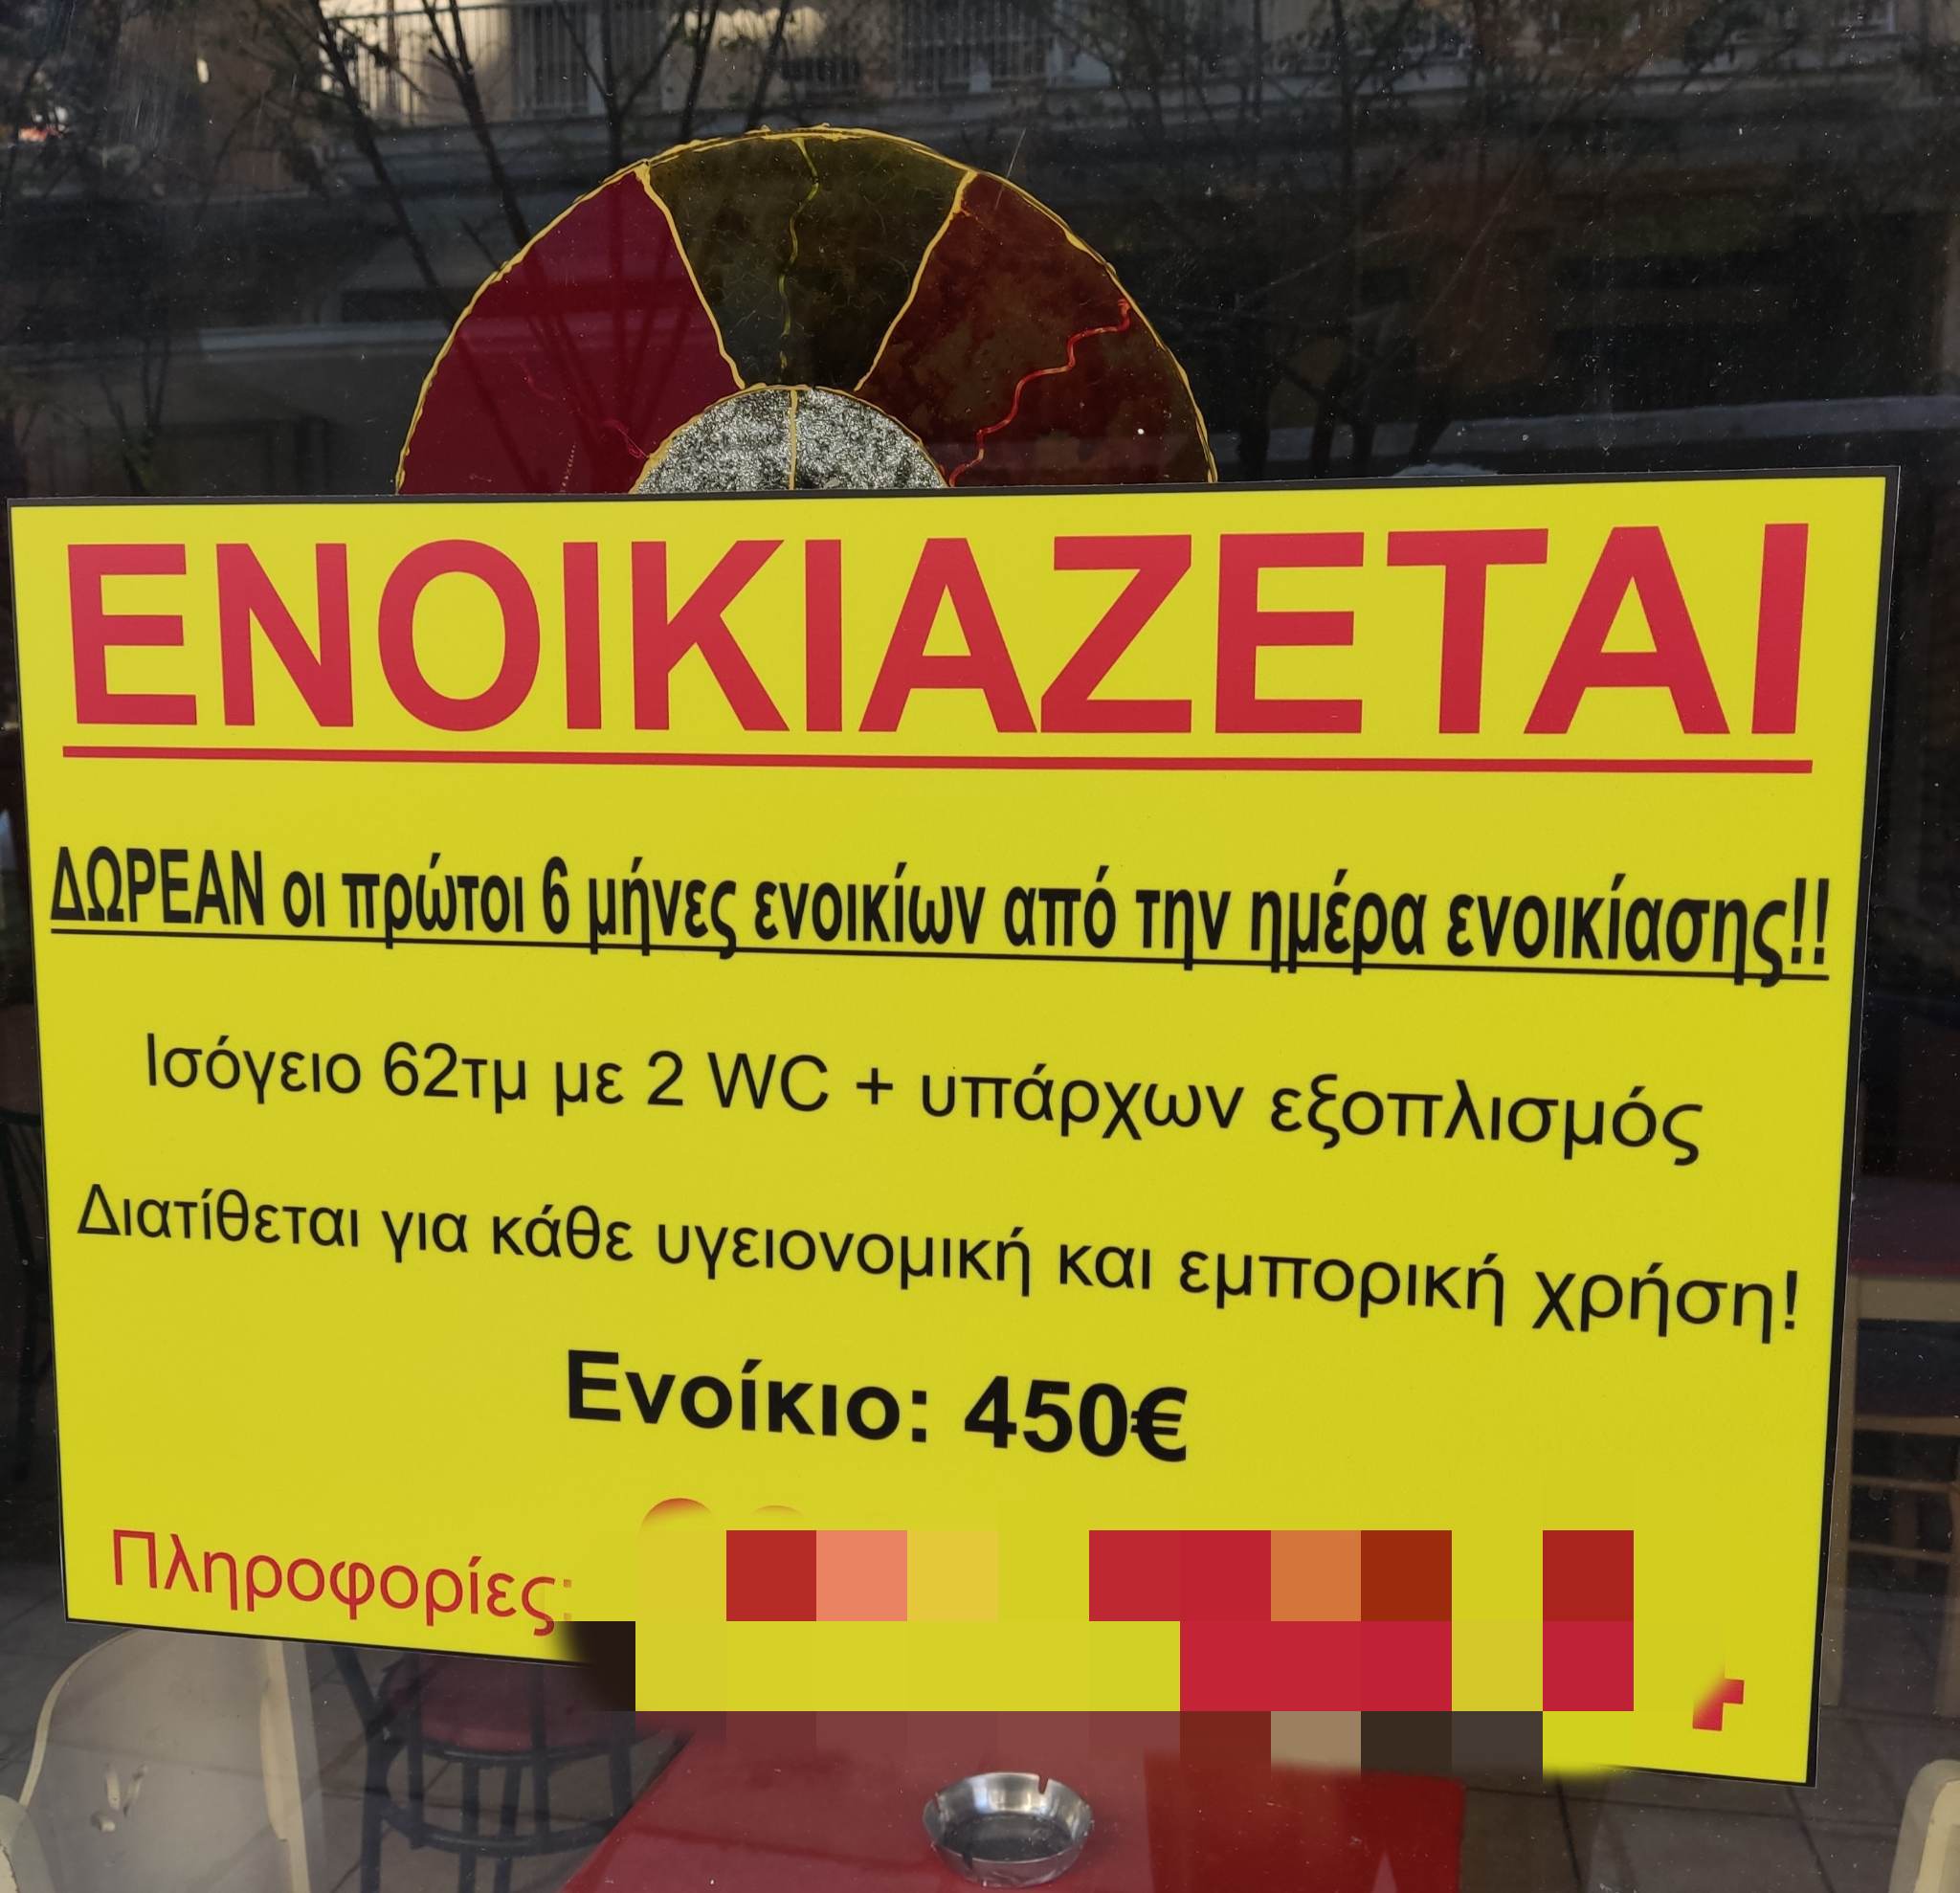 Θεσσαλονίκη: Γίνεται viral η αγγελία για ενοικίαση καταστήματος με δωρεάν τους πρώτους 6 μήνες